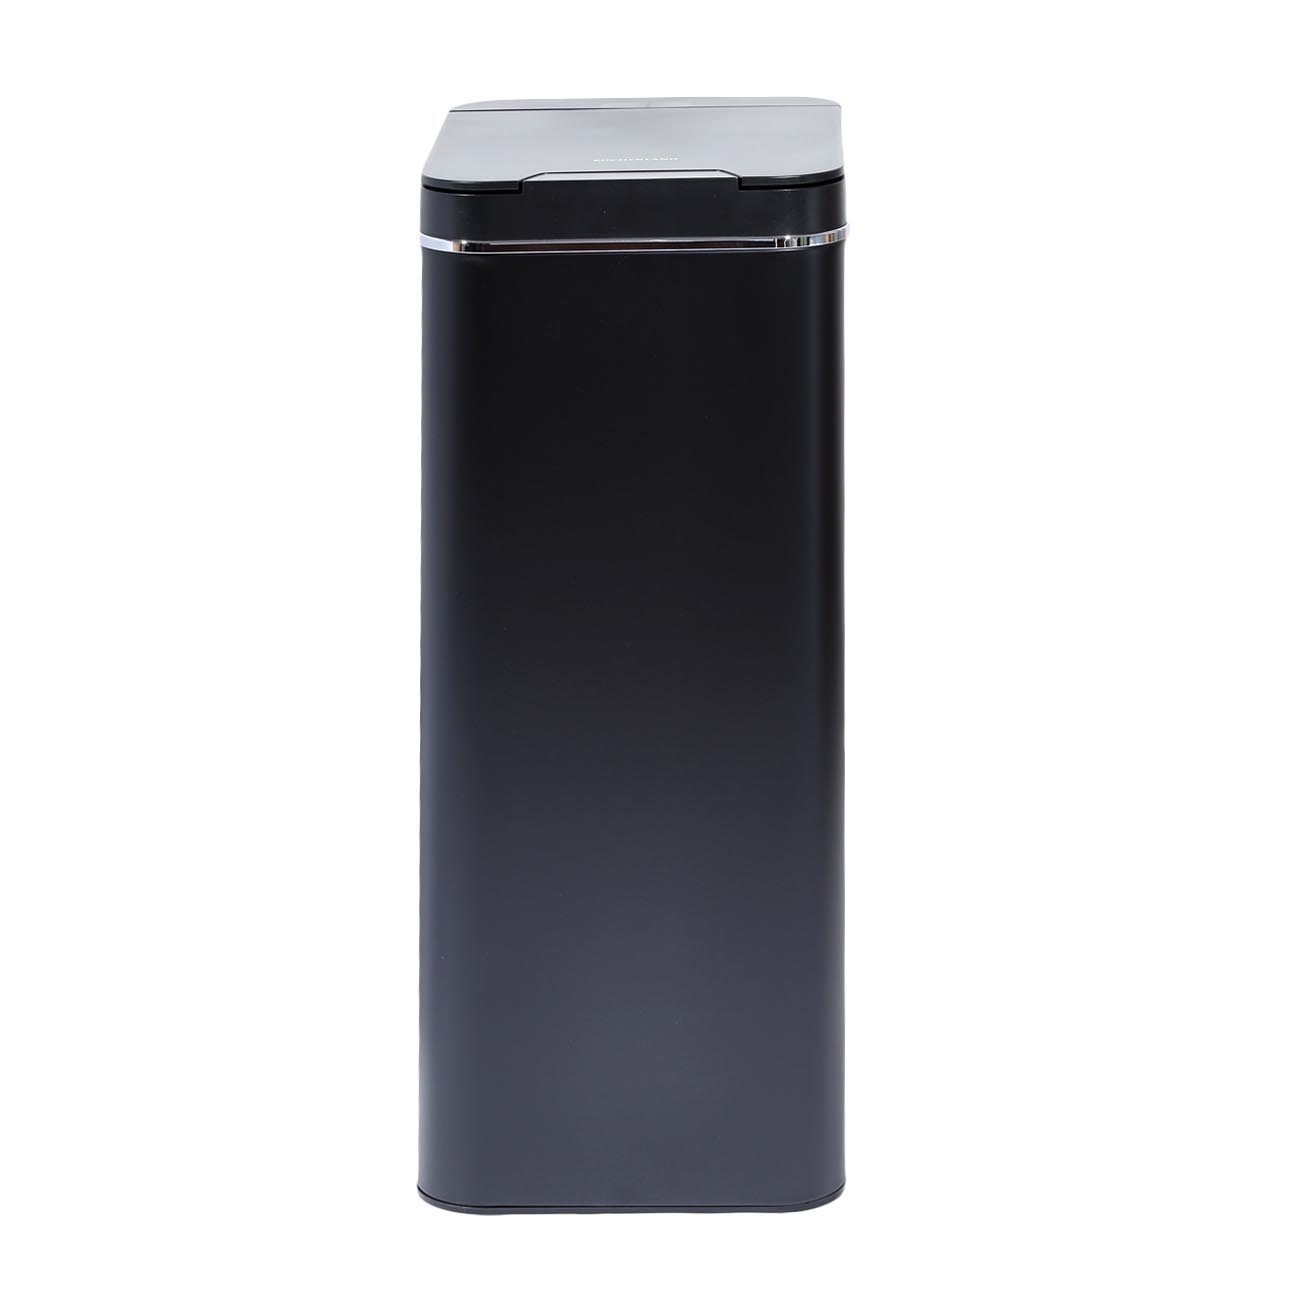 Ведро для мусора, 50 л, сенсорное, металл/пластик, прямоугольное, черное, Style, Sensor Bin изображение № 3